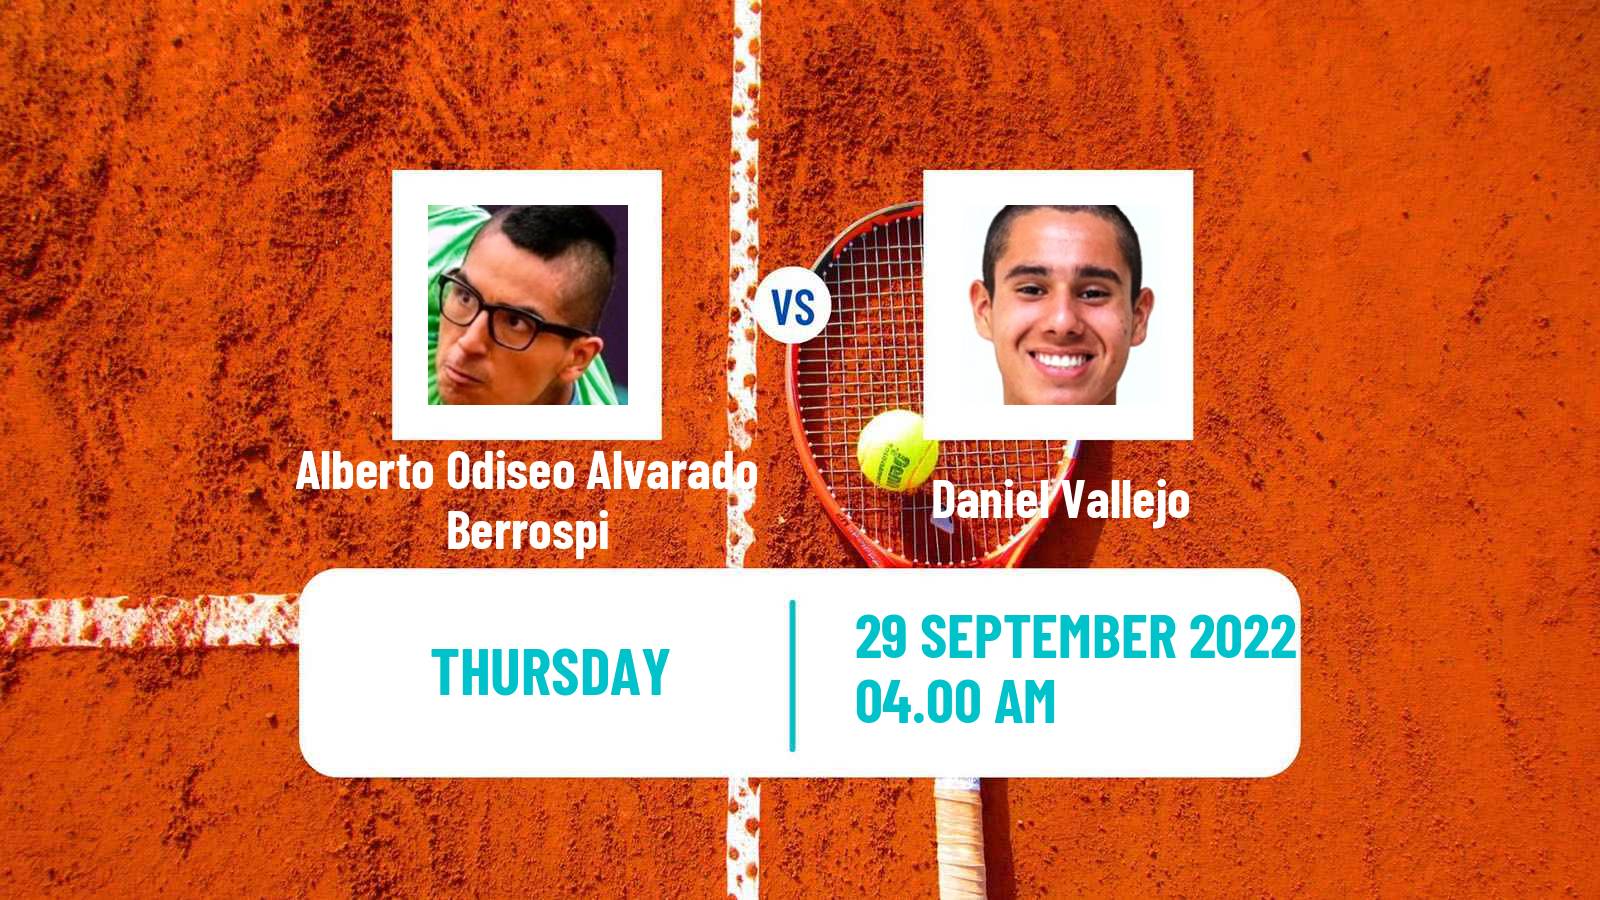 Tennis ITF Tournaments Alberto Odiseo Alvarado Berrospi - Daniel Vallejo